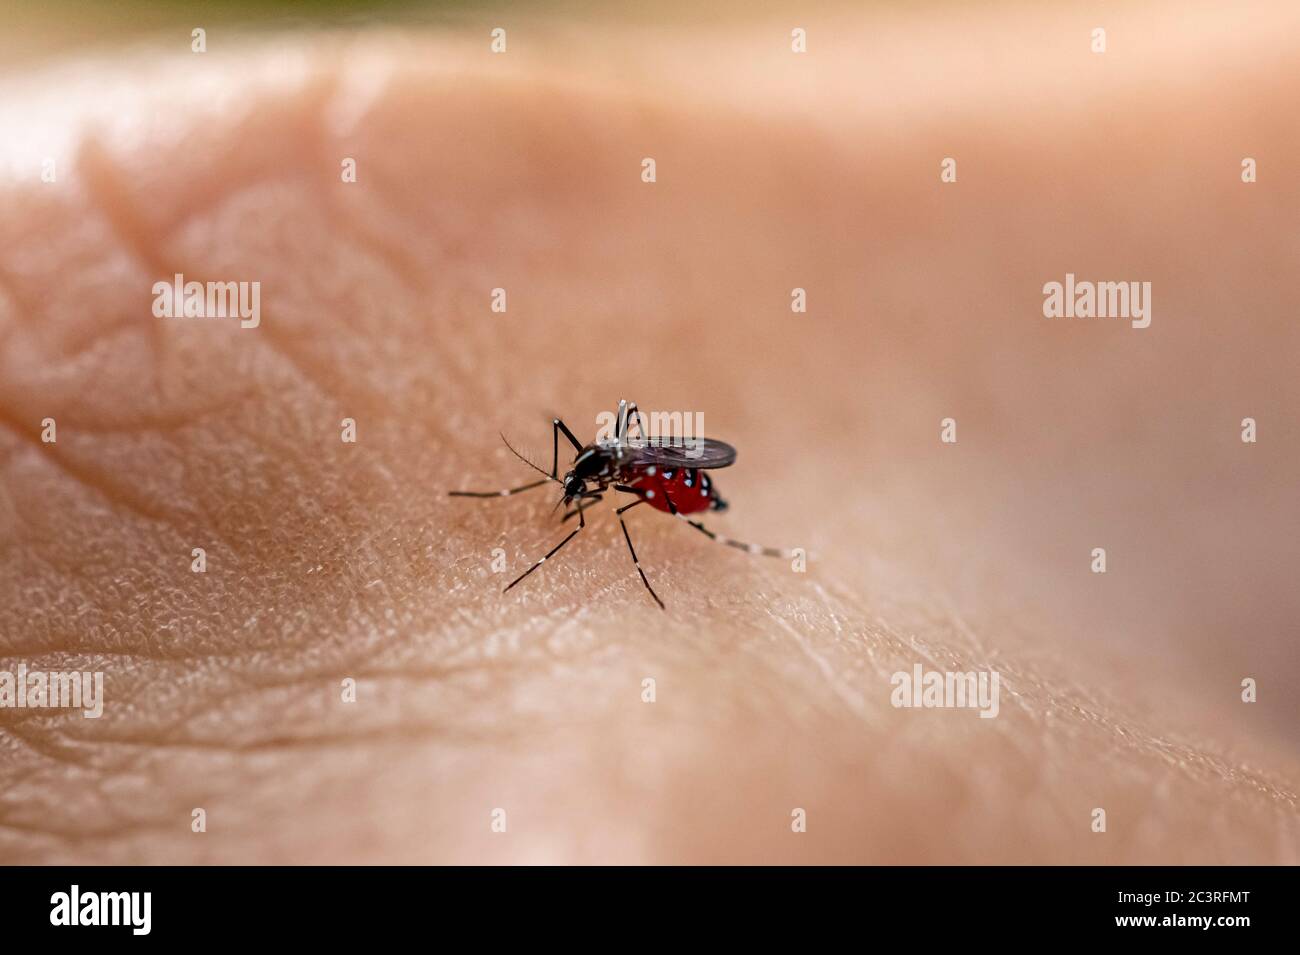 Aedes aegypti zanzara che mordica la pelle umana. Trasmettitore di varie malattie come dengue, zika e chikungunya febbre. Foto Stock